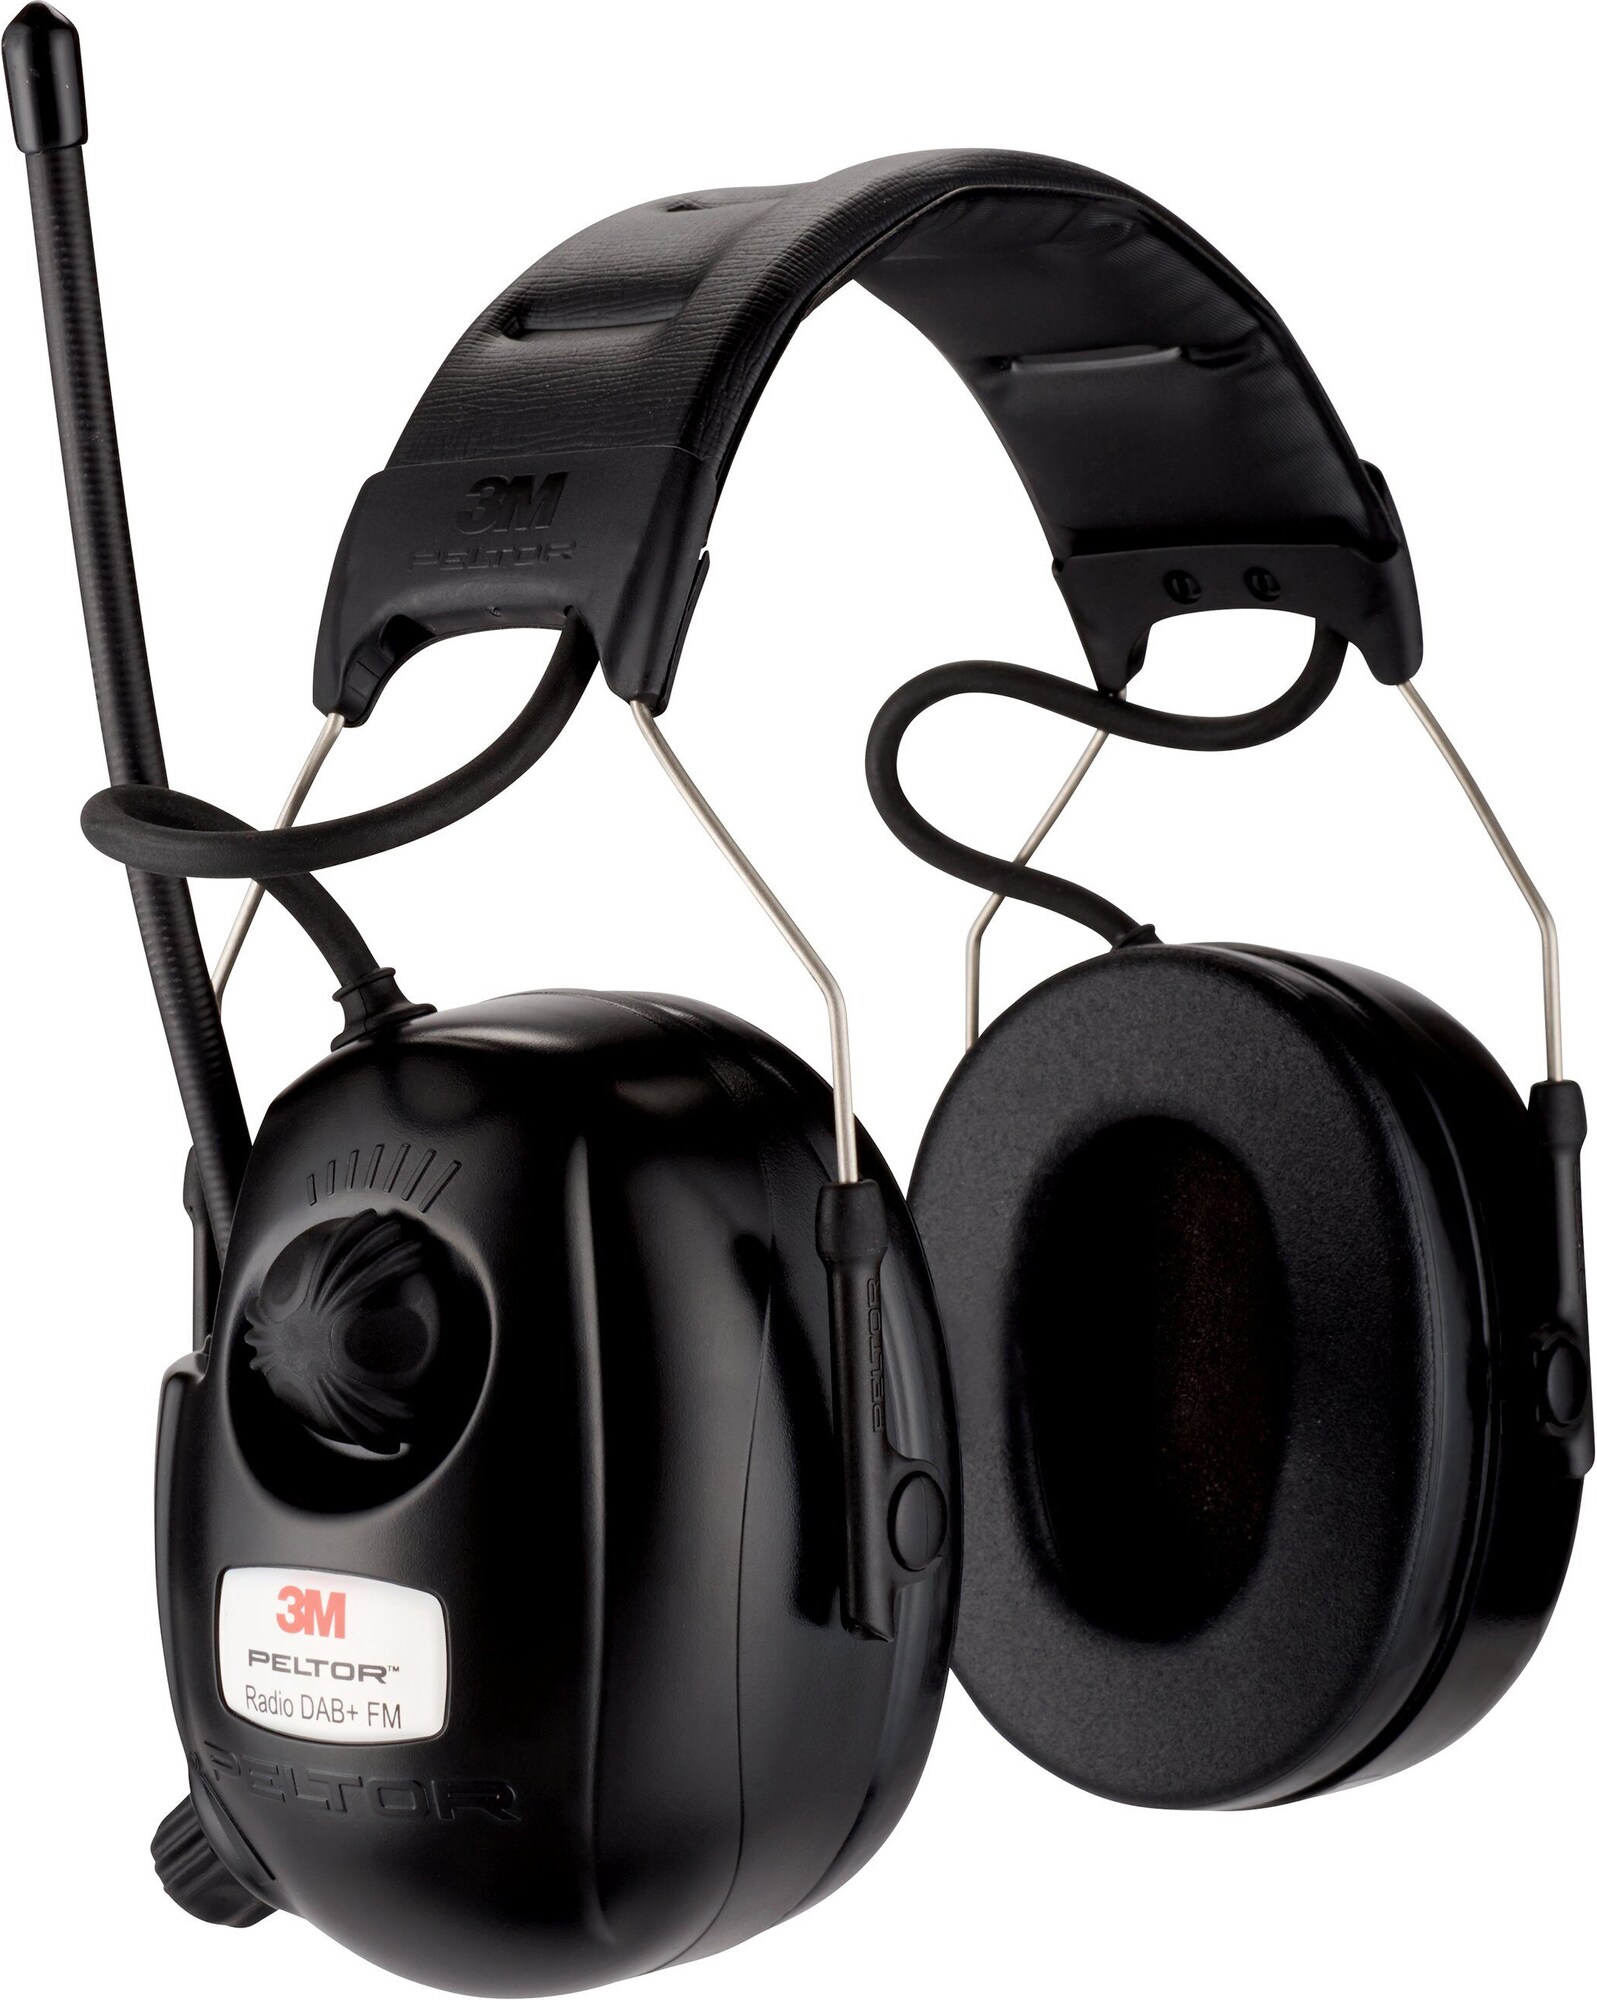 3M Peltor DAB+ og FM Radio kablet headset med hørselsvern - Elkjøp